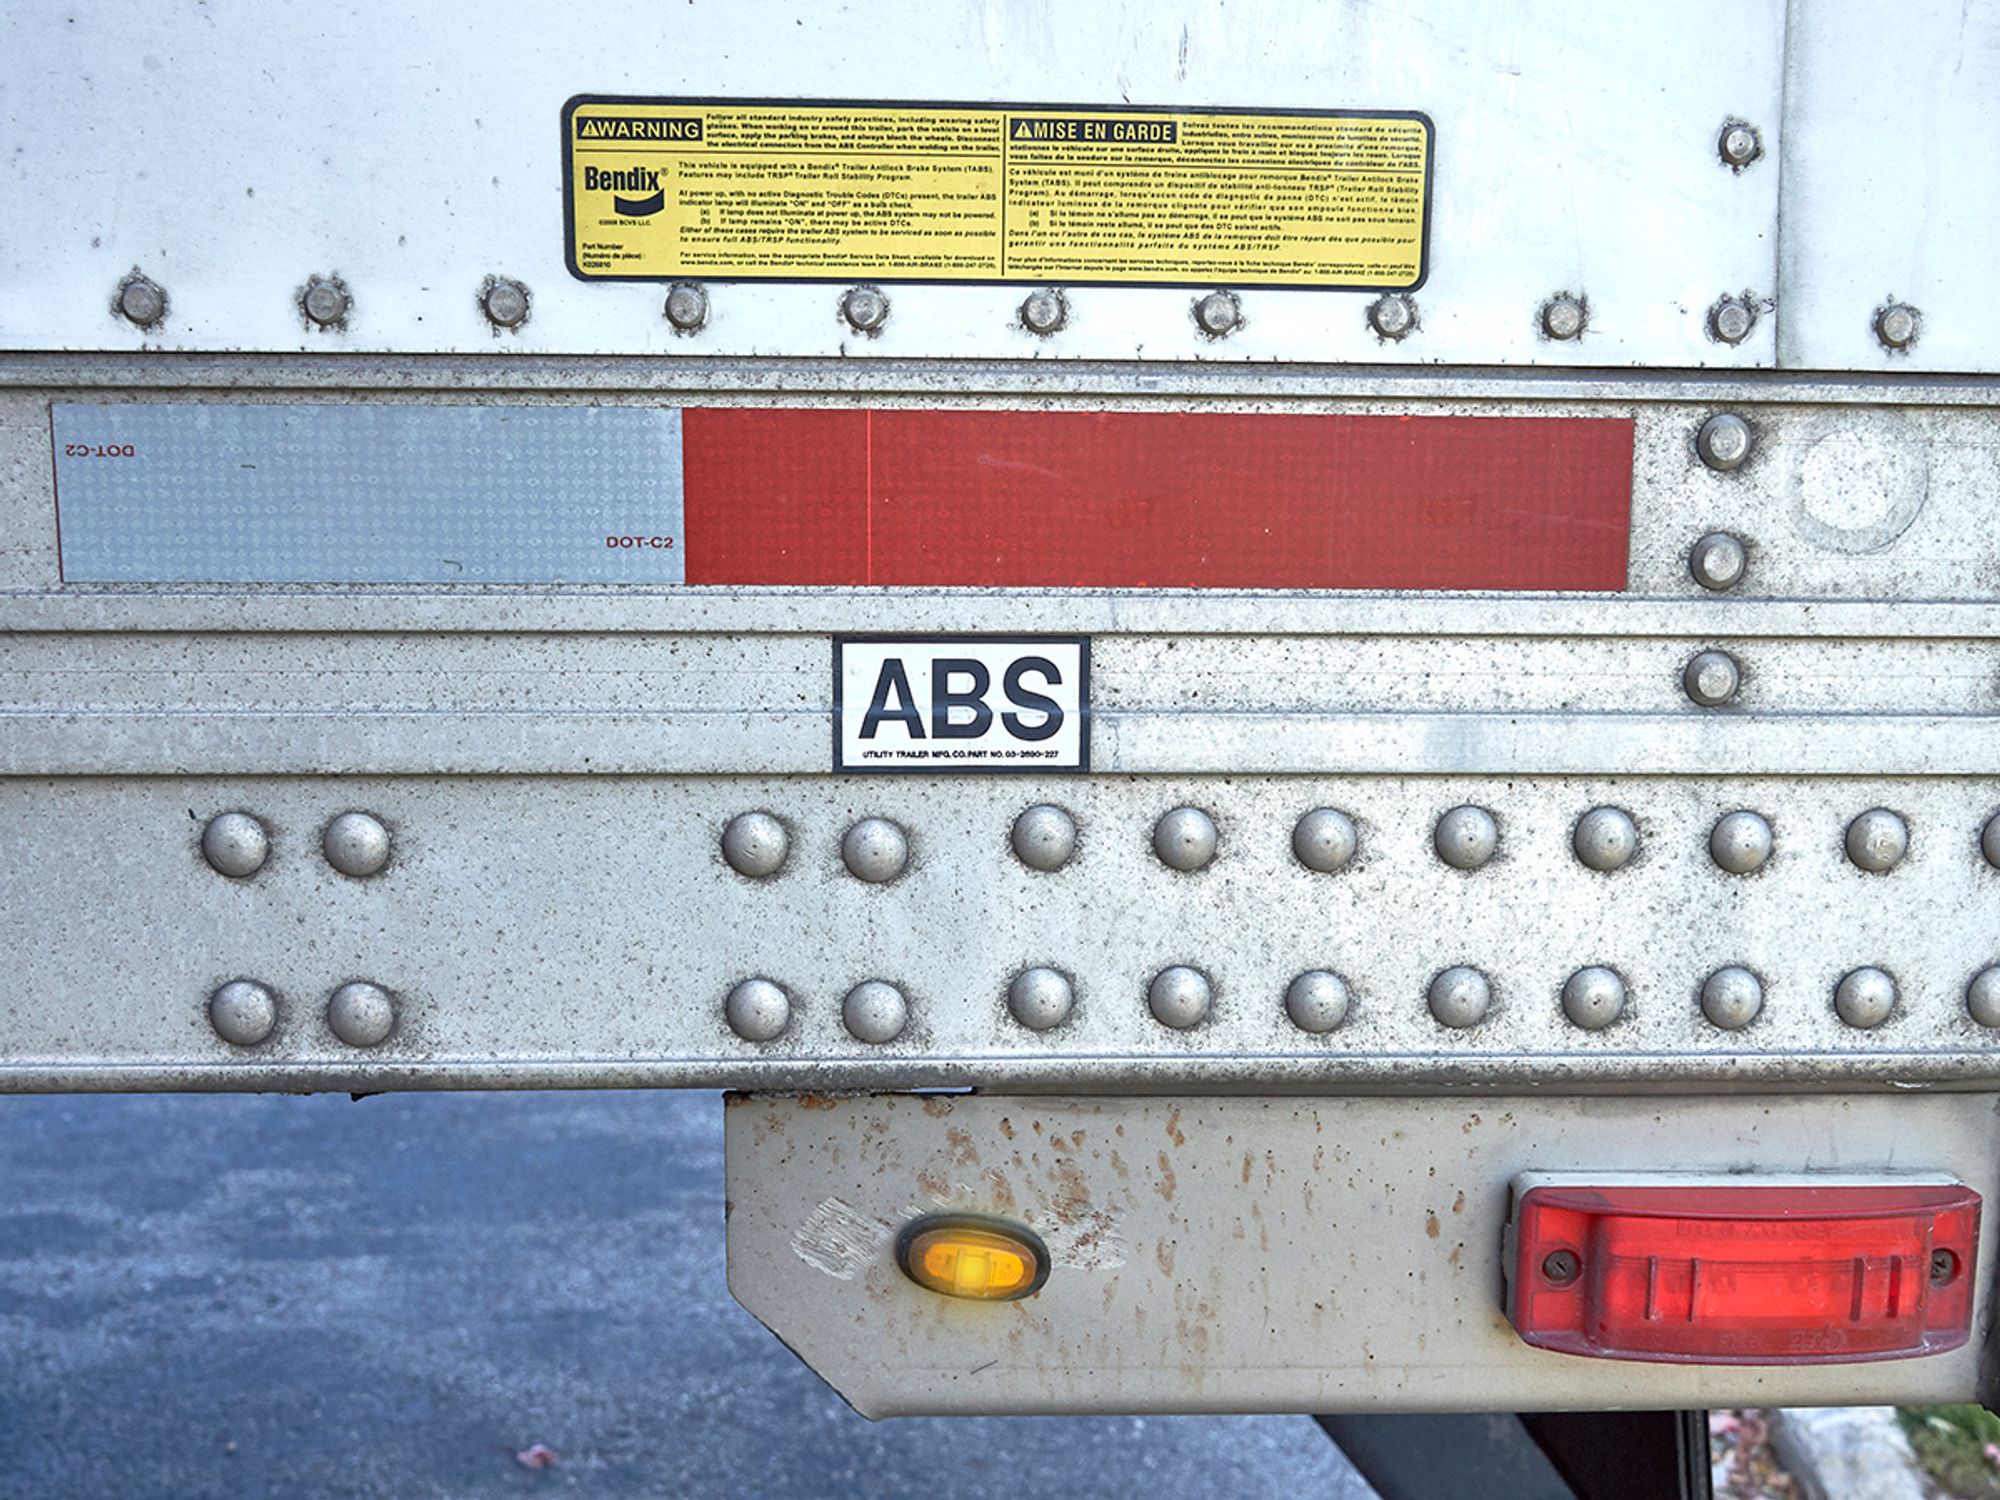 Antilock brake system (ABS)